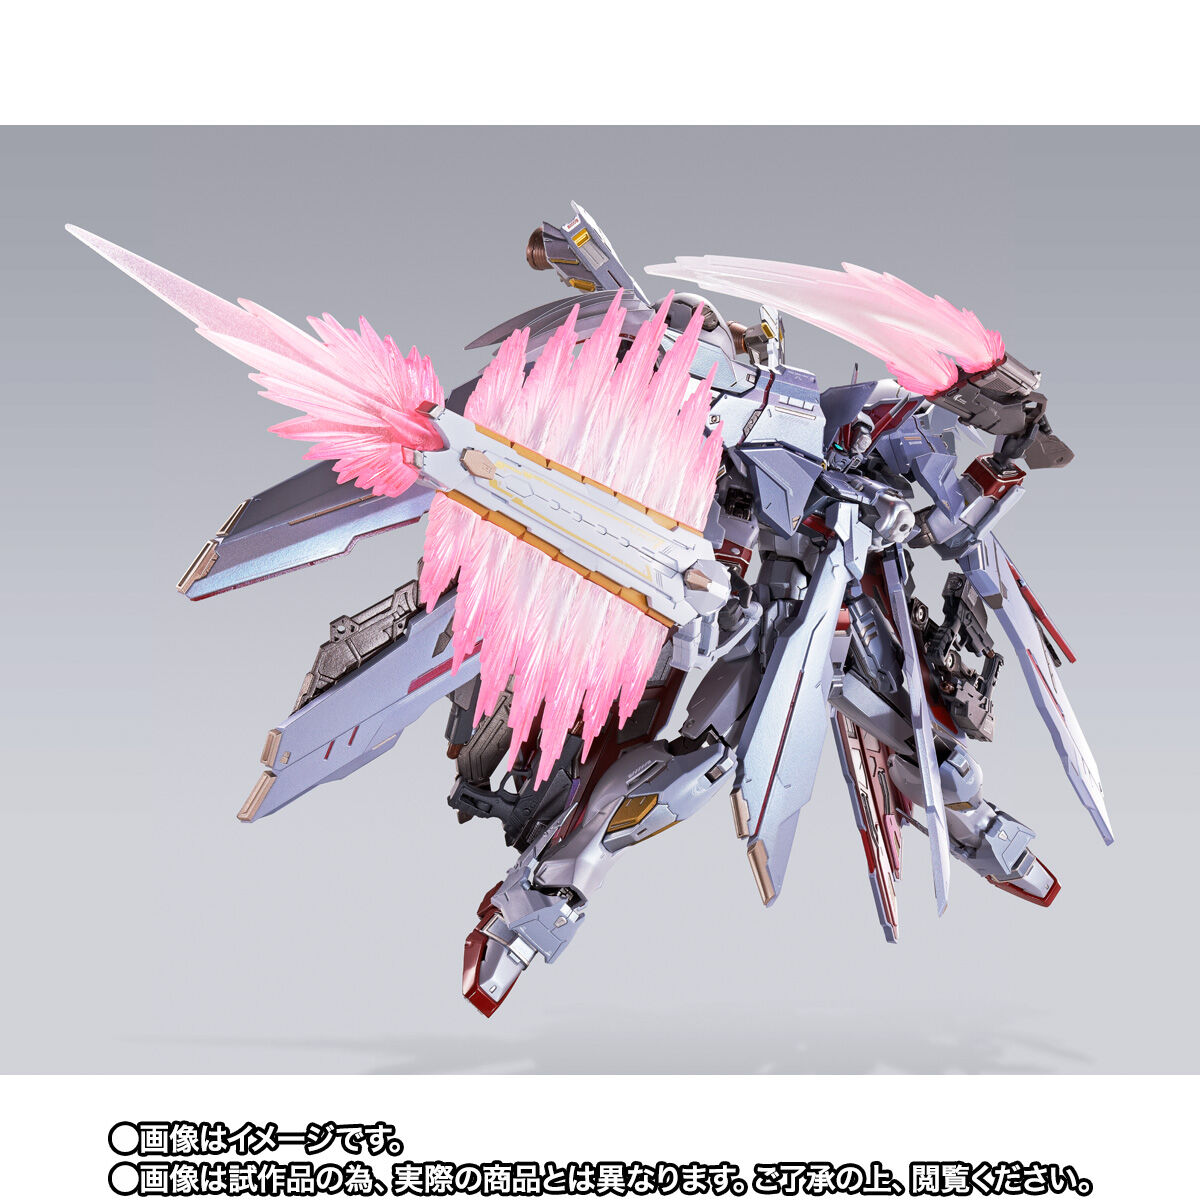 【限定販売】METAL BUILD『クロスボーン・ガンダムX-0 フルクロス』機動戦士クロスボーン・ガンダム 可動フィギュア-004